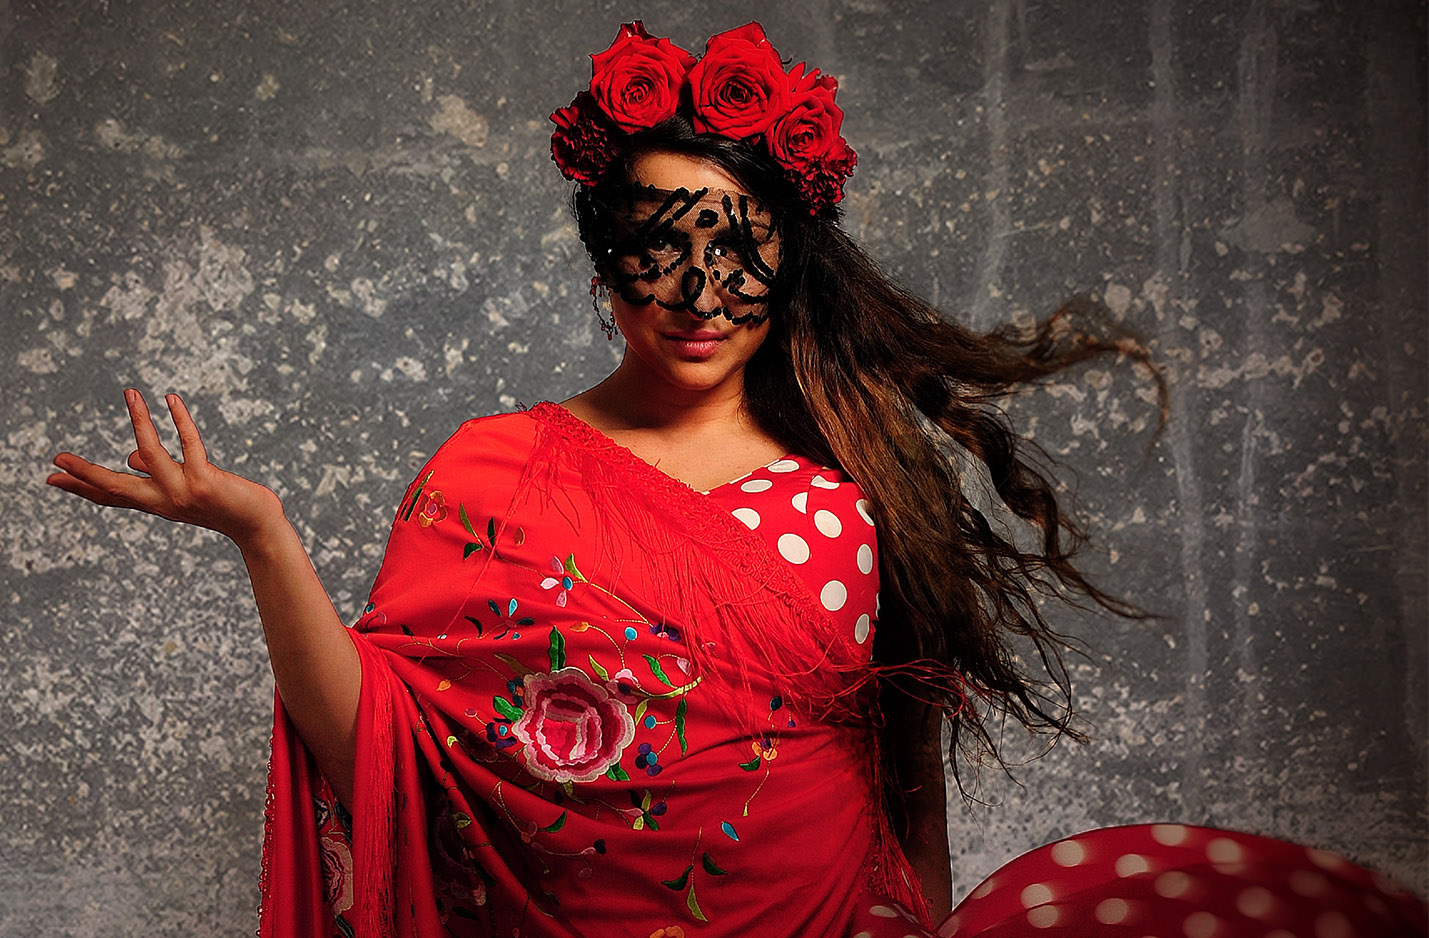 Klickbar bild Carmen med förhinder. Kvinna i röd klänning med röda blommor i håret och svart spets framför ögonen. Hon håller handen i en danslikande rörelse.